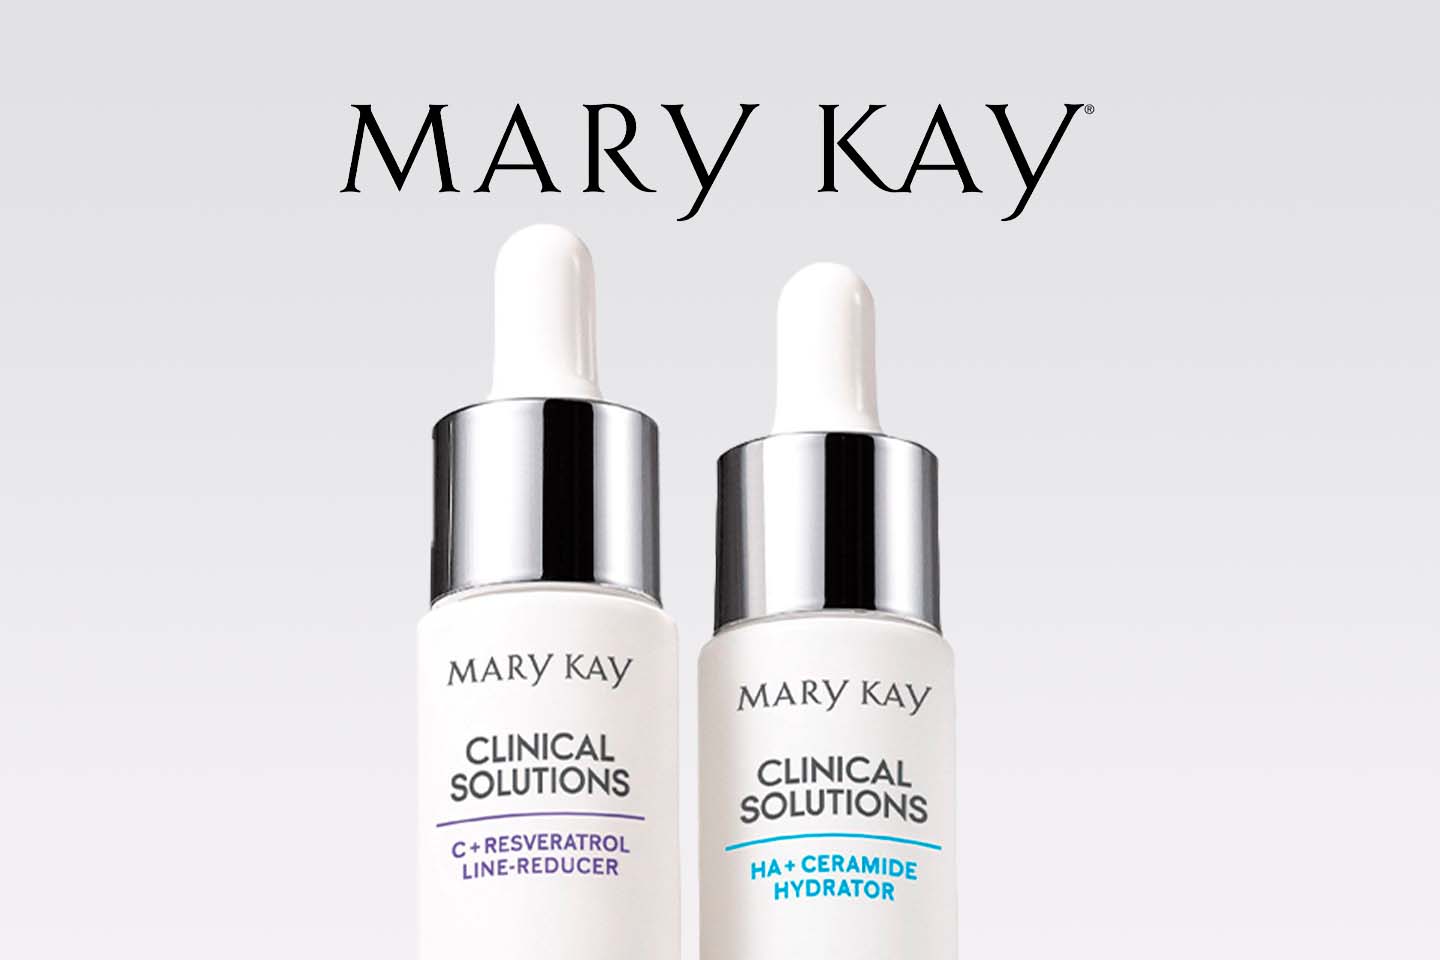 Twee huidverzorgingsproducten van Mary Kay 